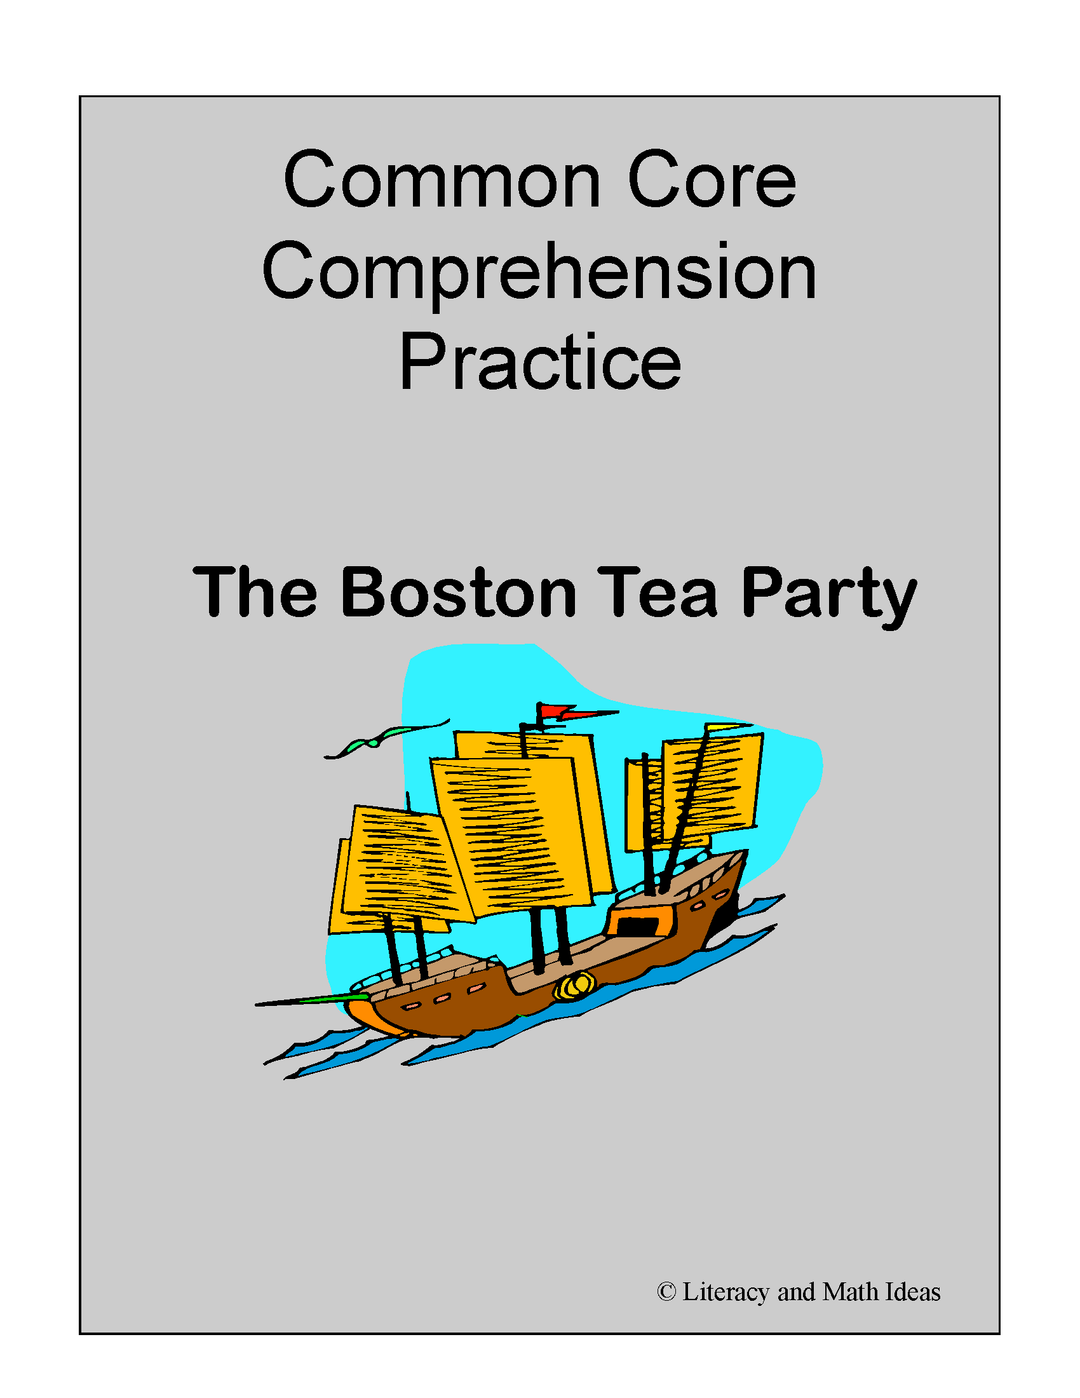 Boston Tea Party Common Core Comprehension